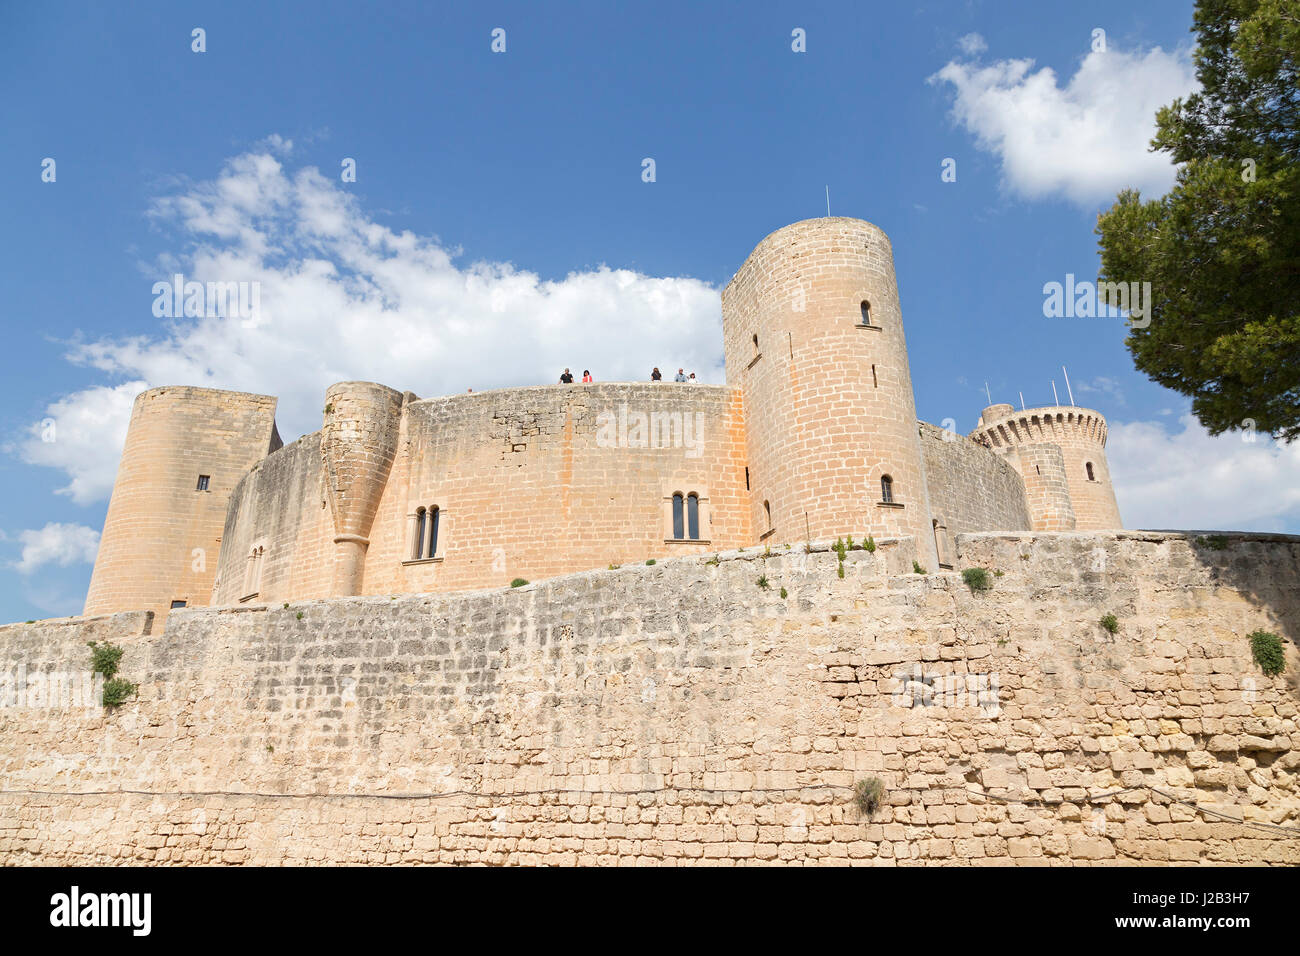 Castell de Bellver in Palma de Mallorca, Spain Stock Photo